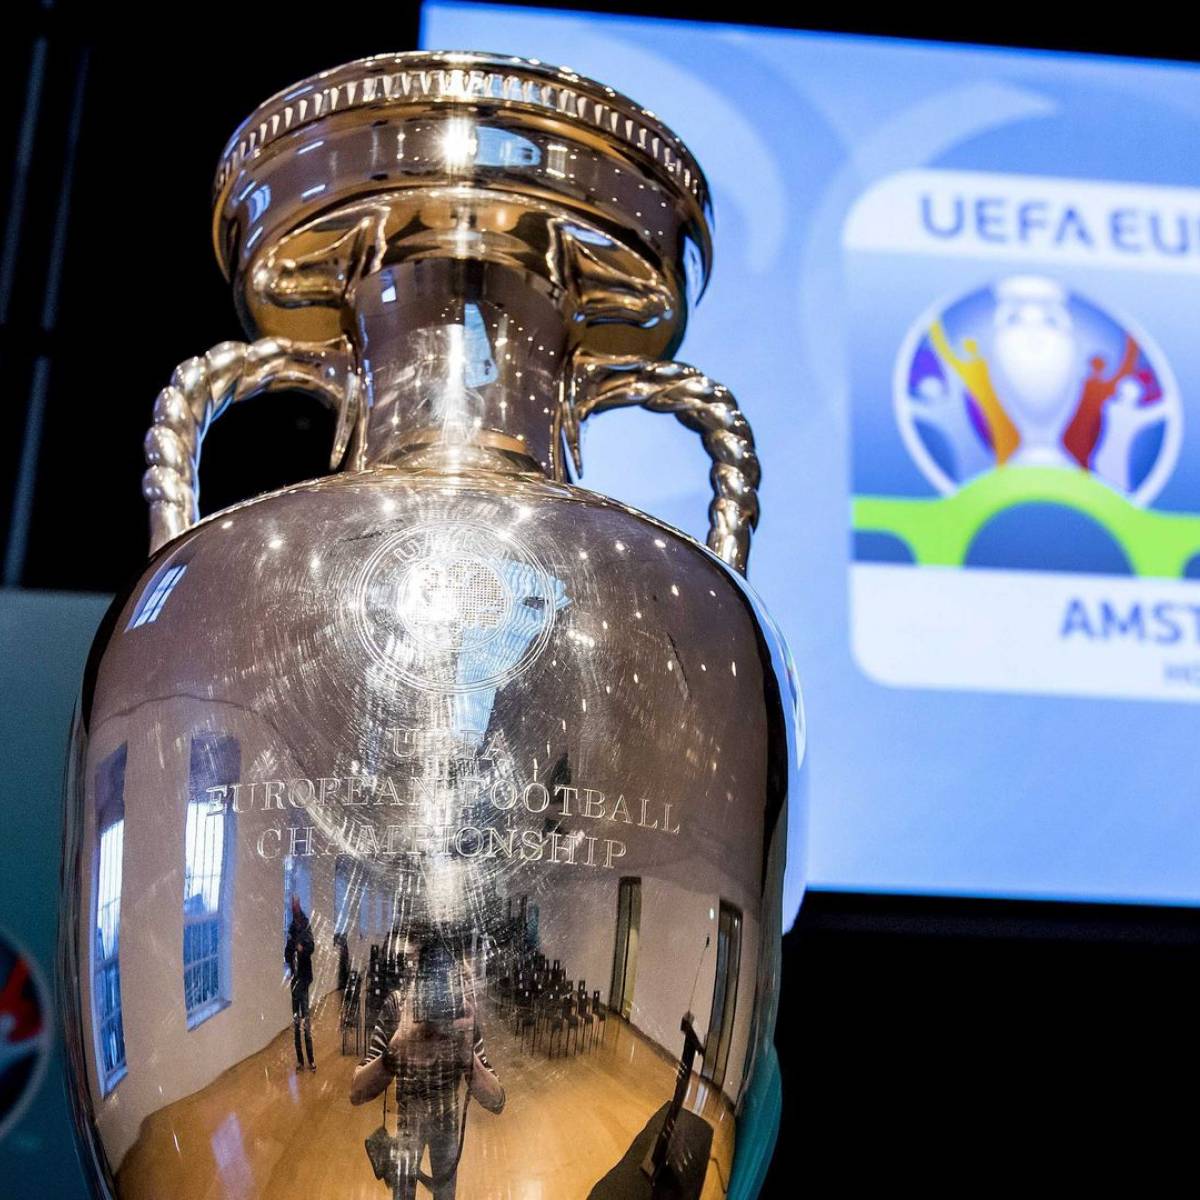 Euro 2024 : l'UEFA et Adidas dévoilent le ballon officiel, plus  technologique et moderne que jamais !